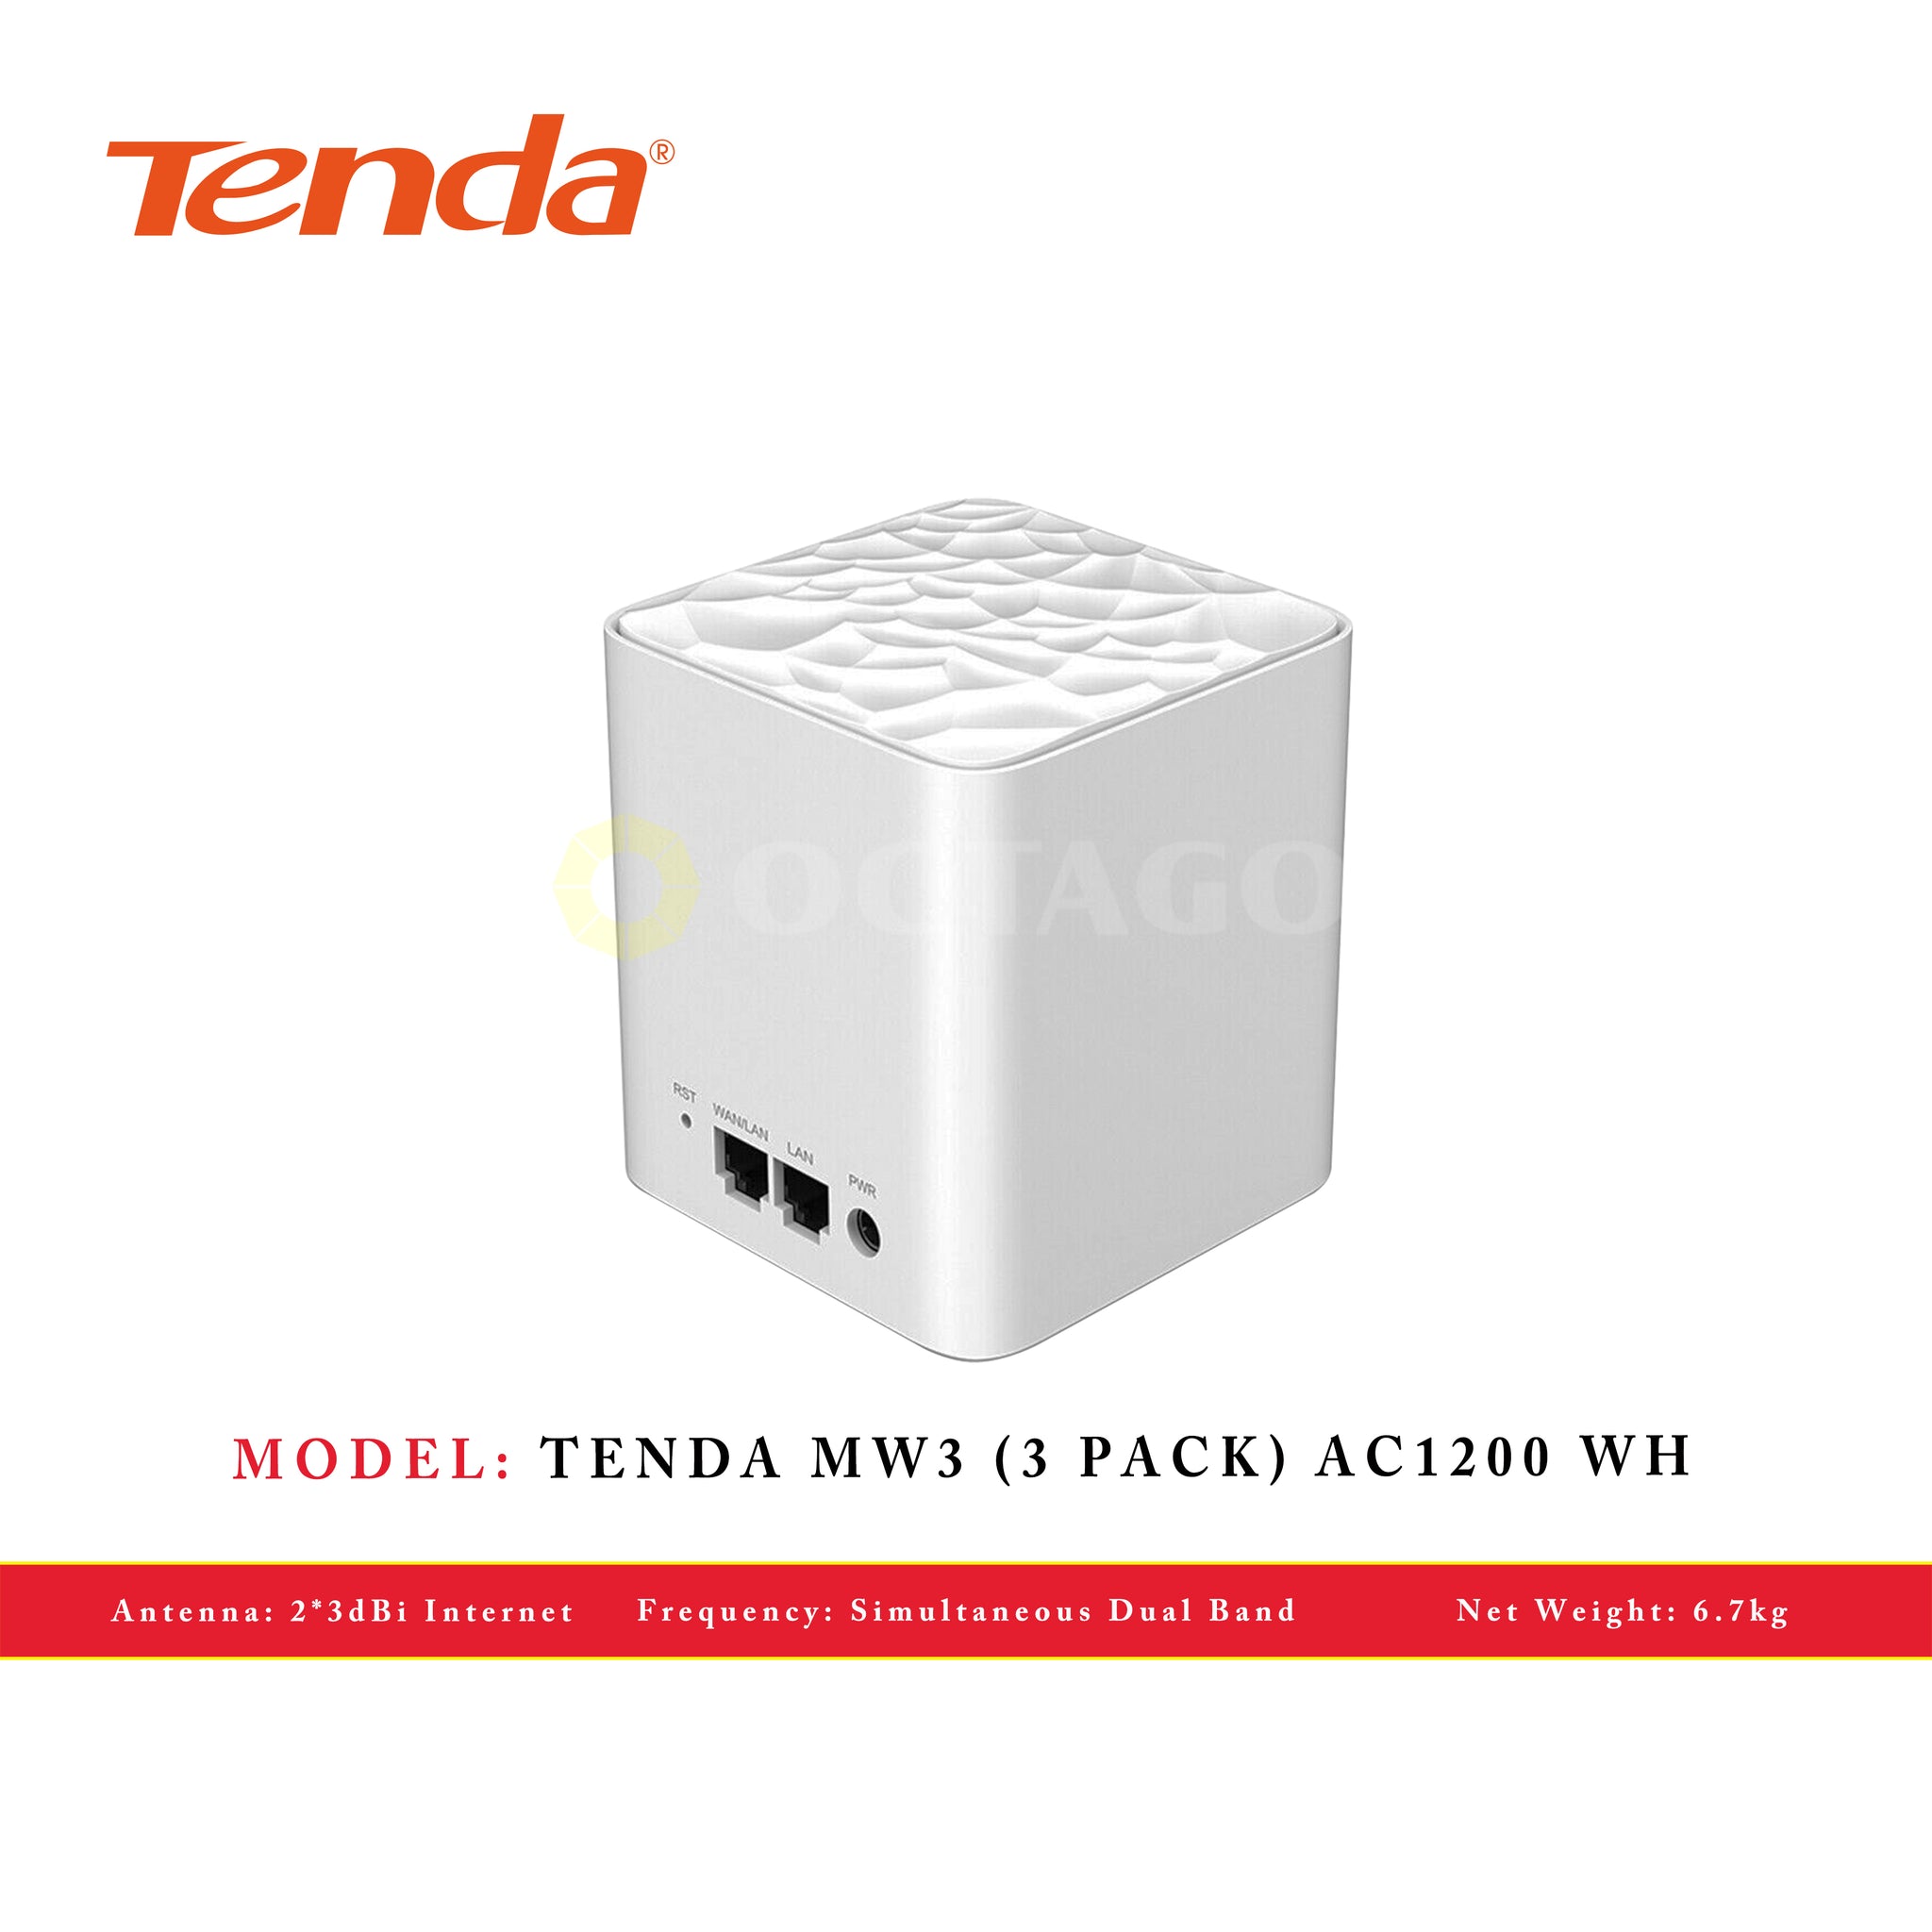 TENDA MW3 (3 PACK) AC1200 WH